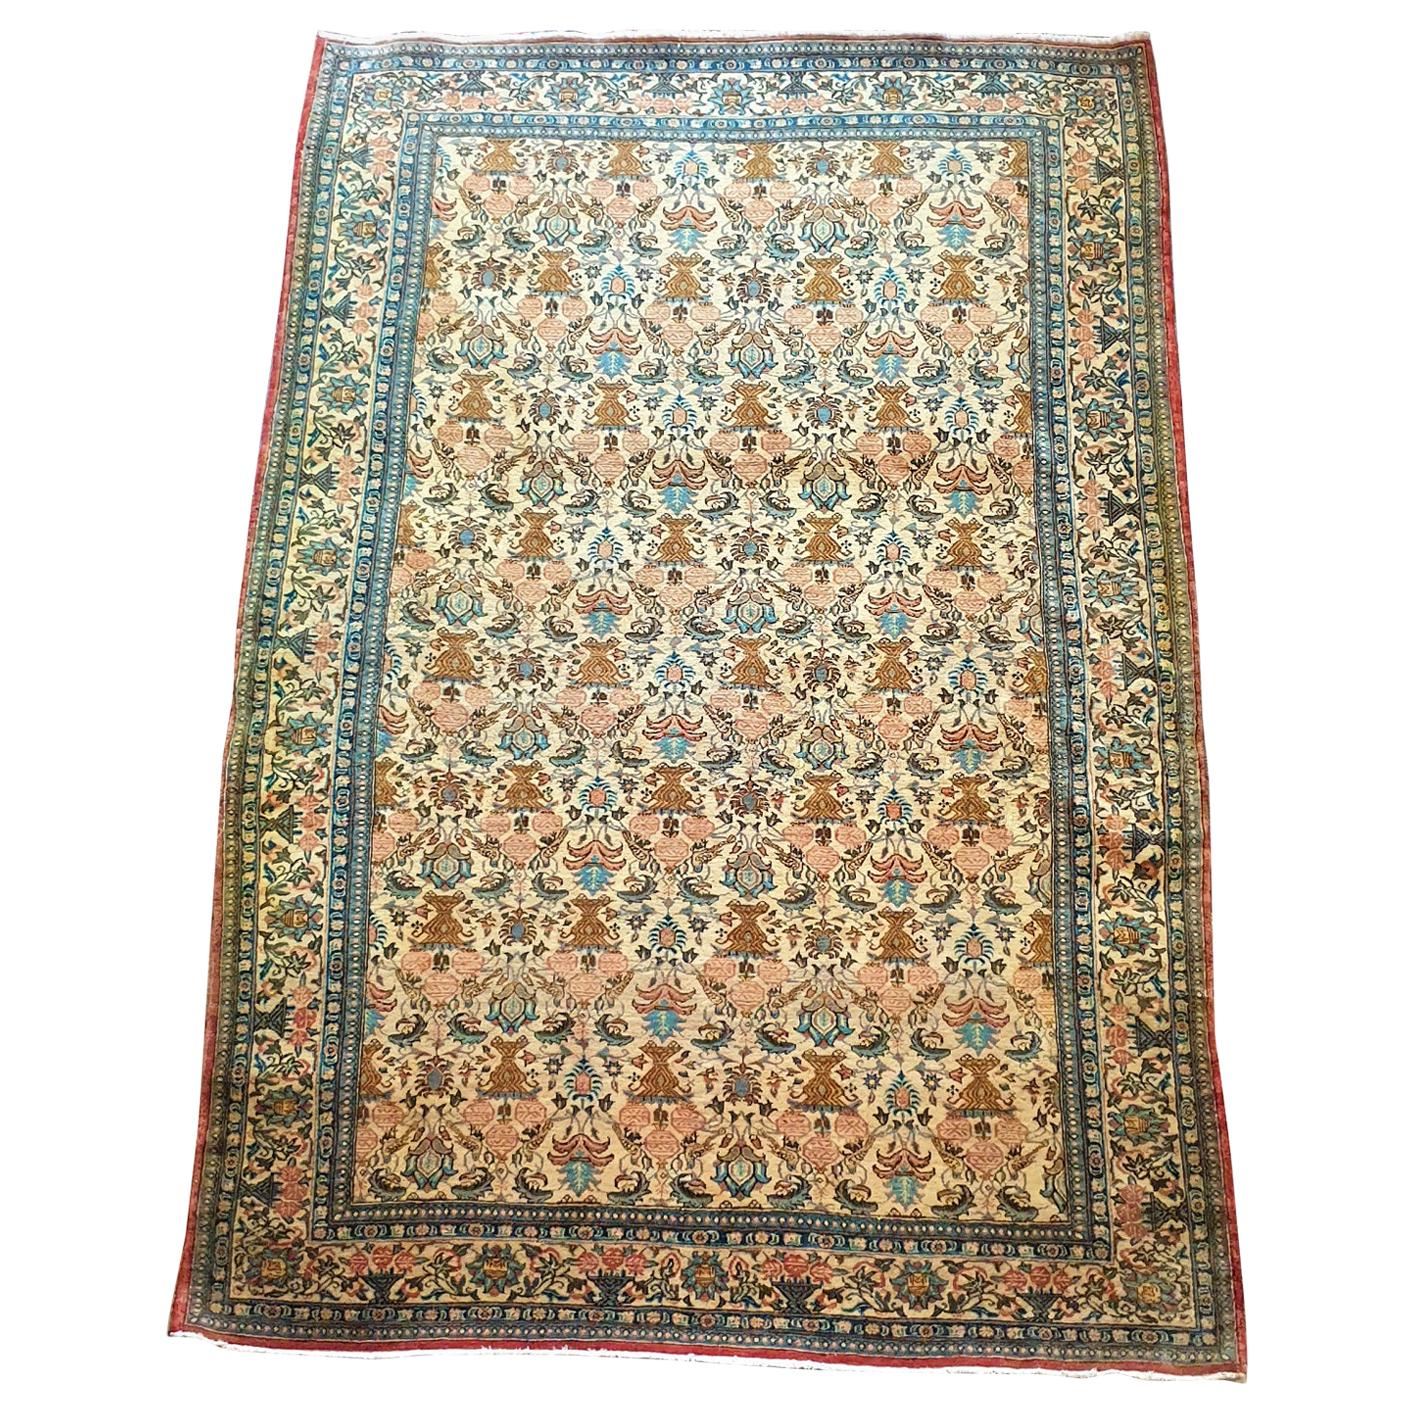 916 - Beautiful vintage Qom rug